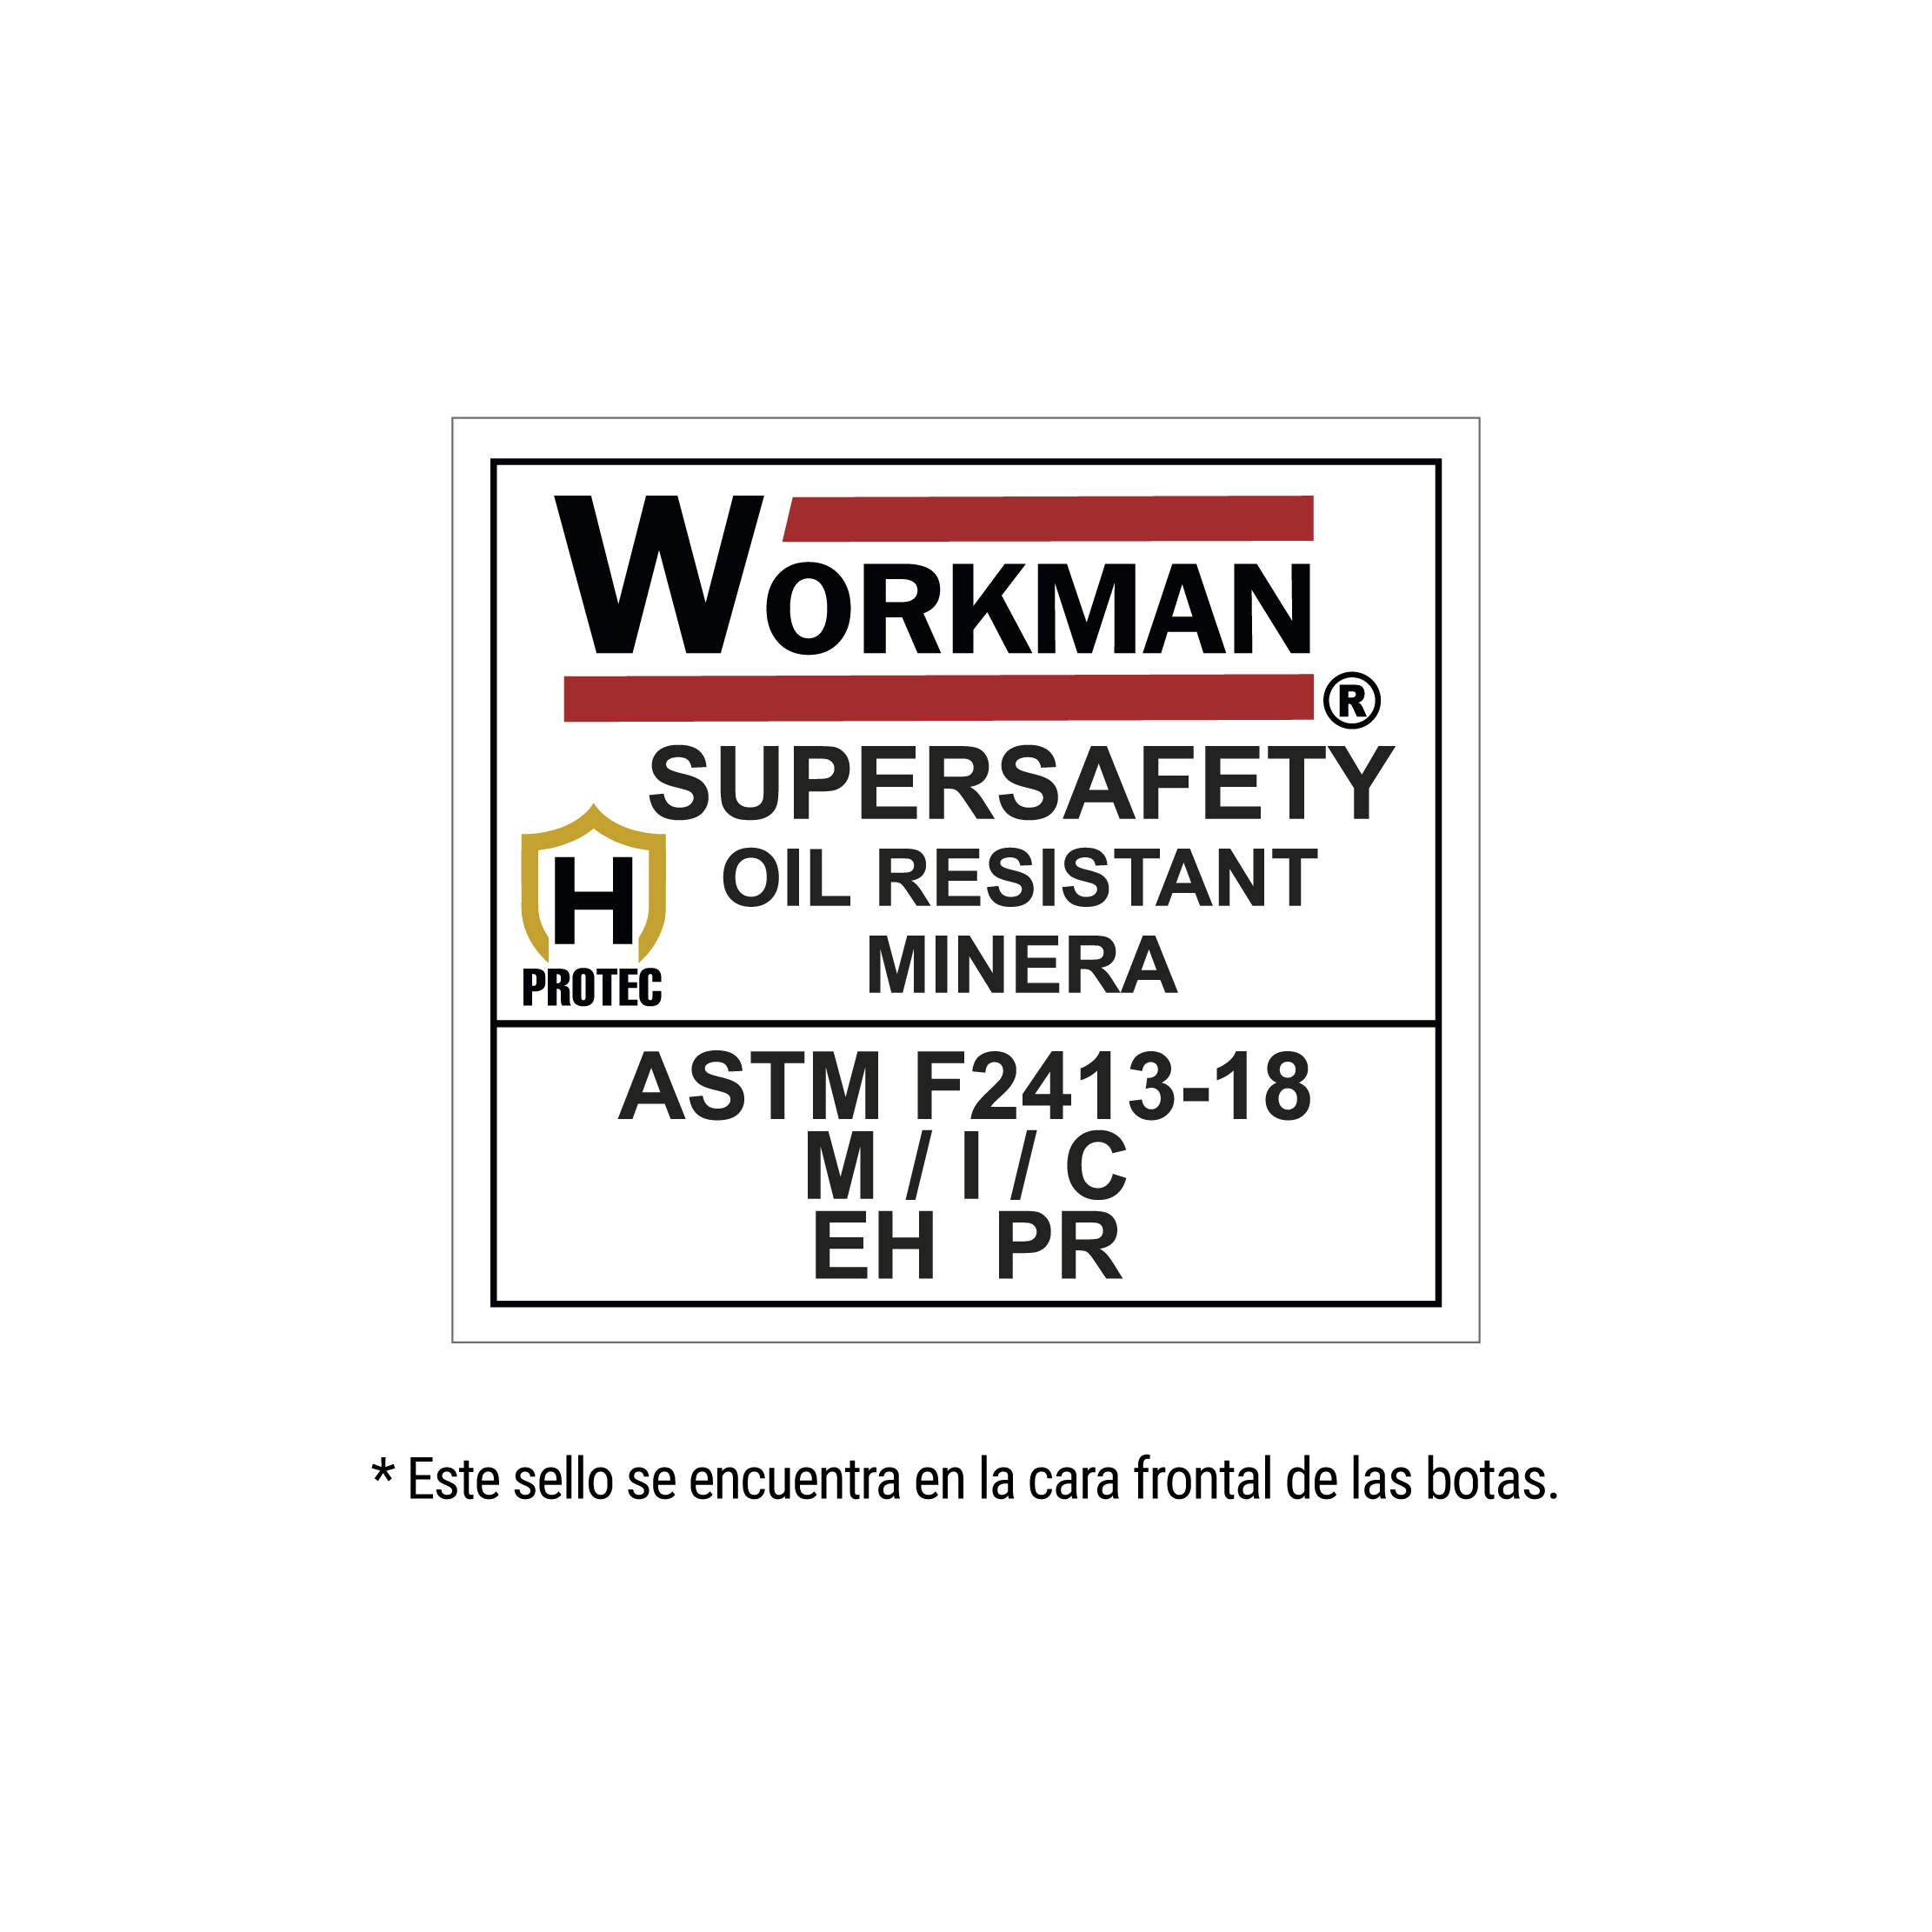 Workman Super Safety Oil Resistant Minera Amarilla